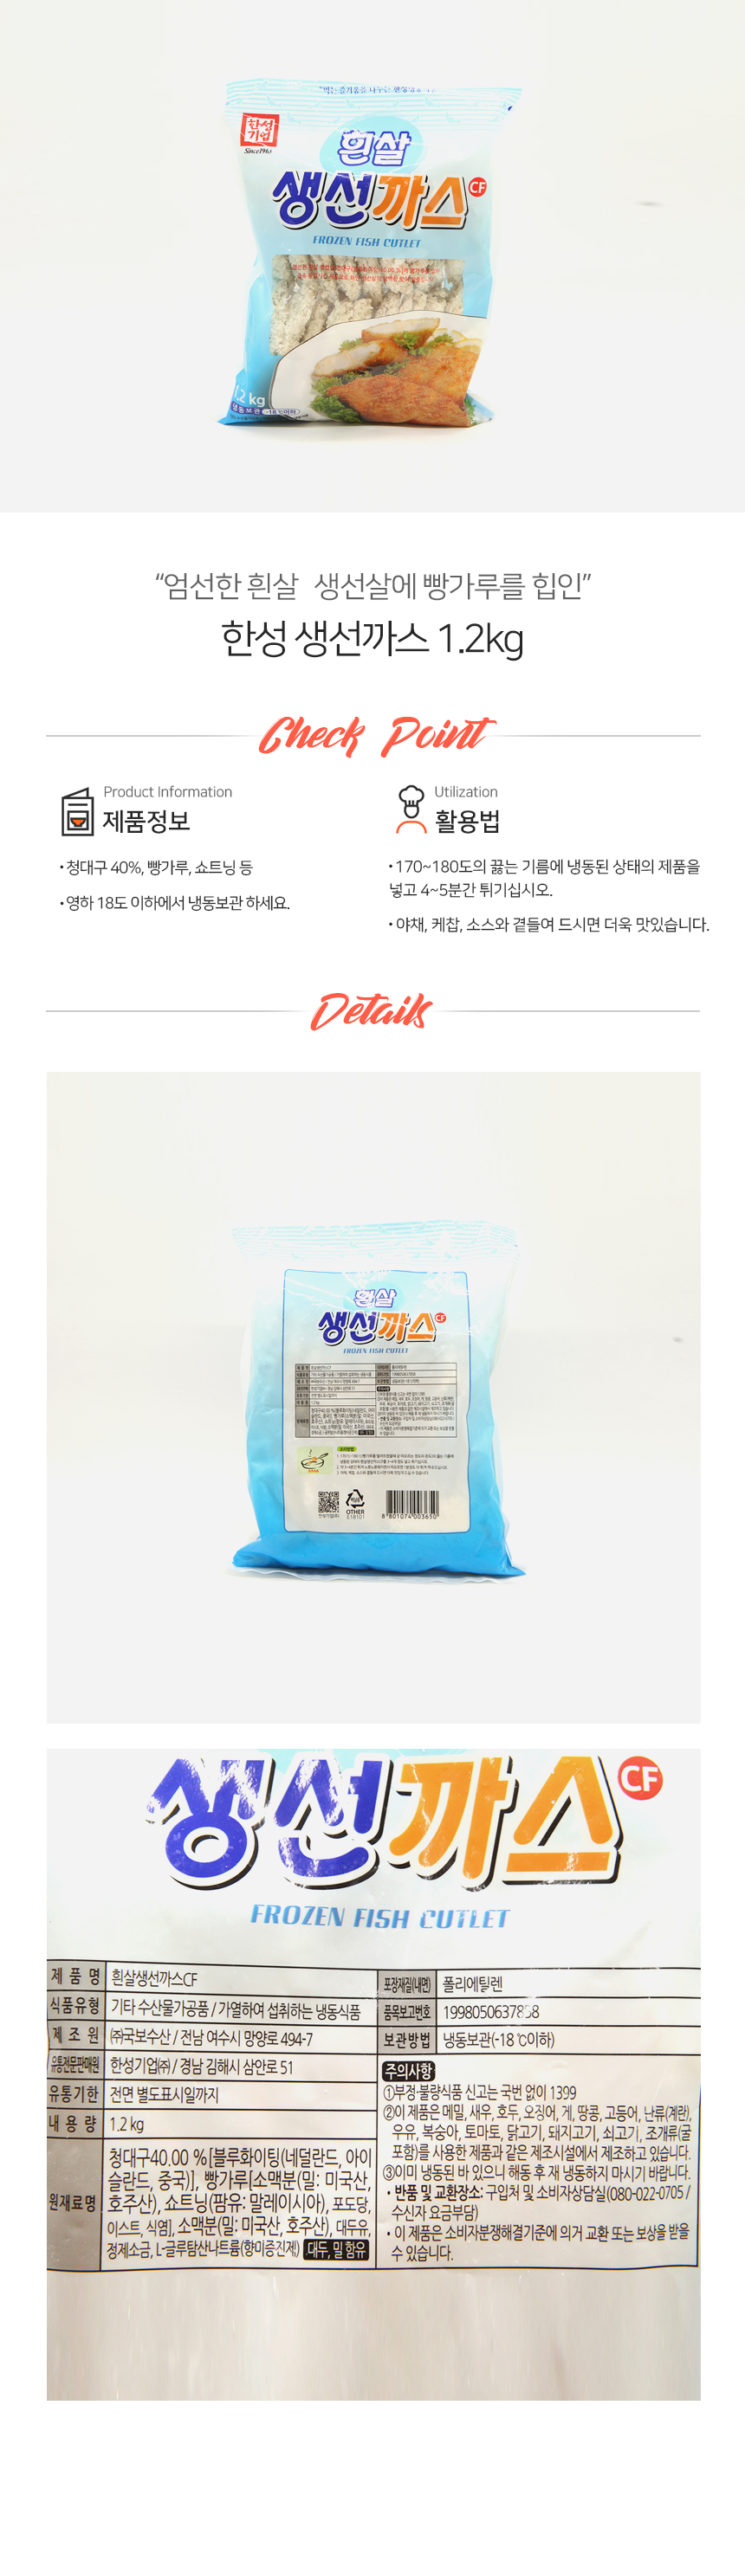 韓國食品-[Hansung] 炸魚塊 1.2kg